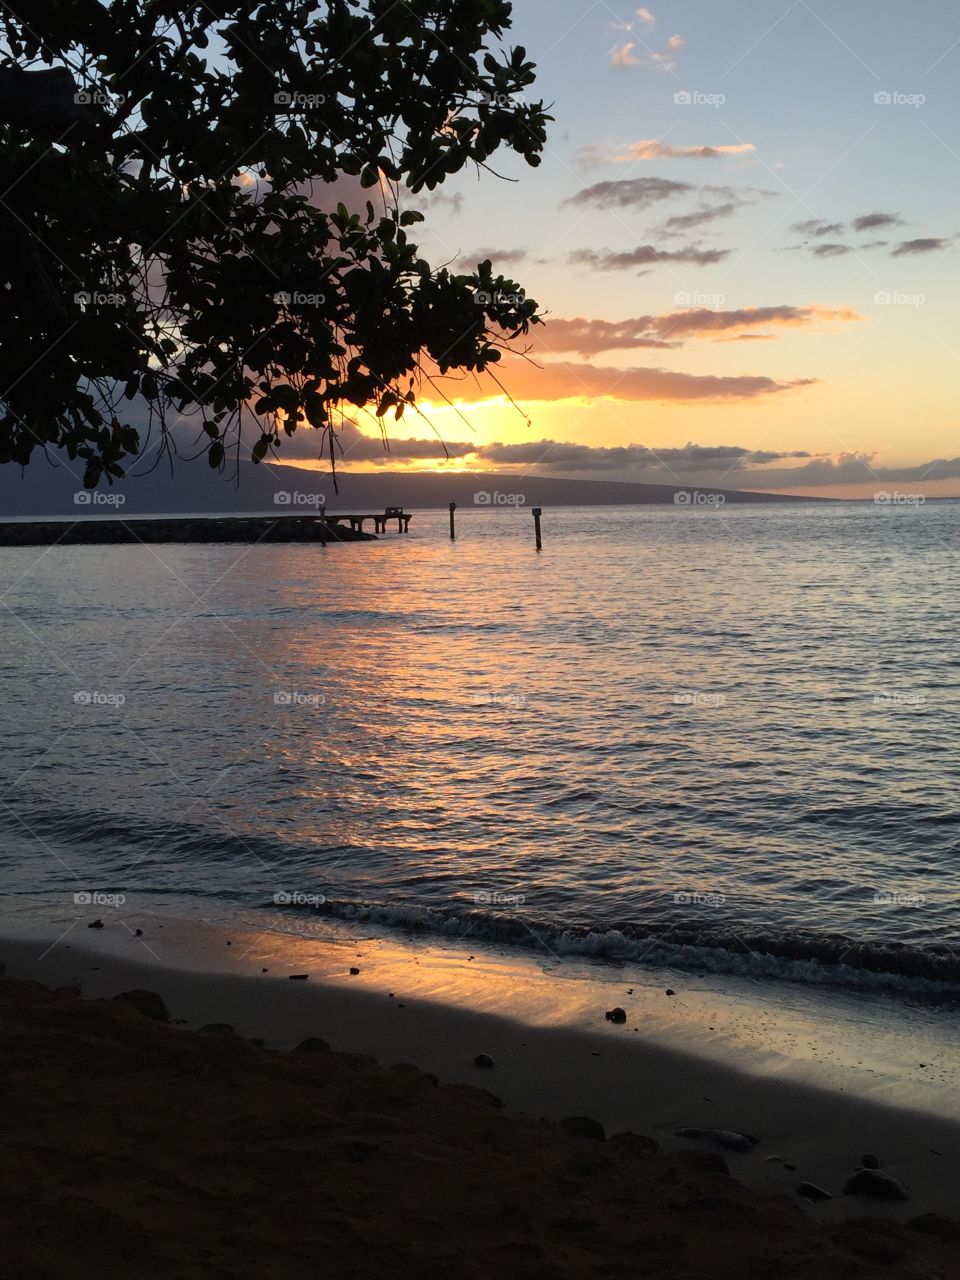 Sunset on Maui 